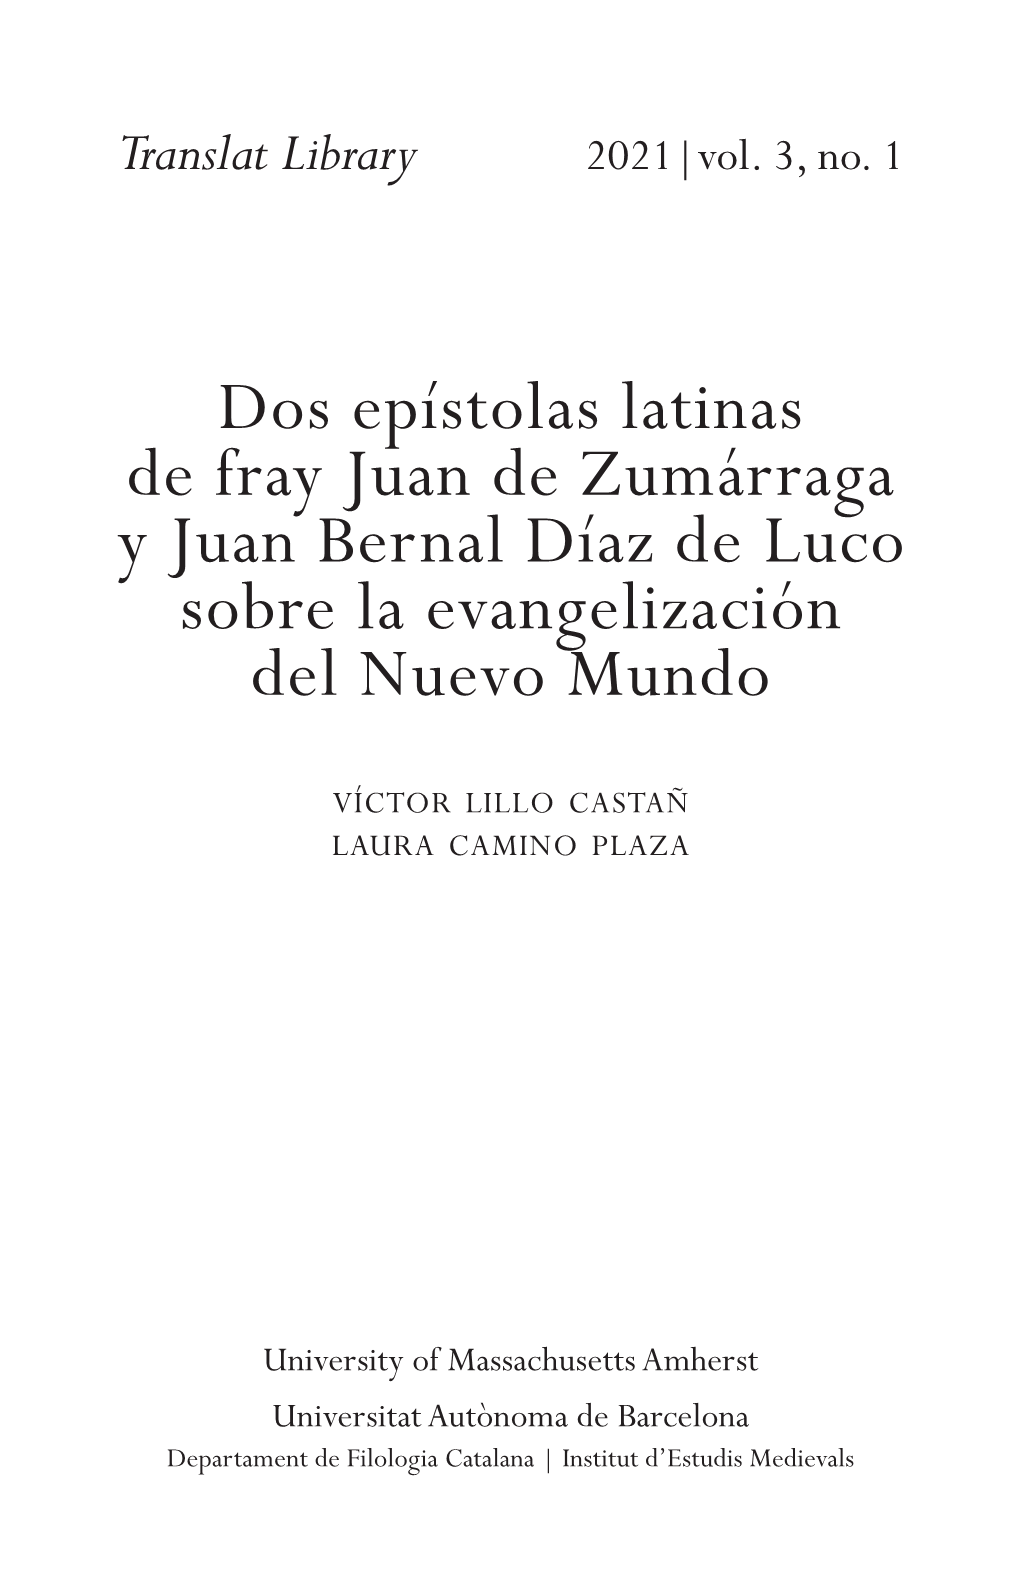 Dos Epístolas Latinas De Fray Juan De Zumárraga Y Juan Bernal Díaz De Luco Sobre La Evangelización Del Nuevo Mundo